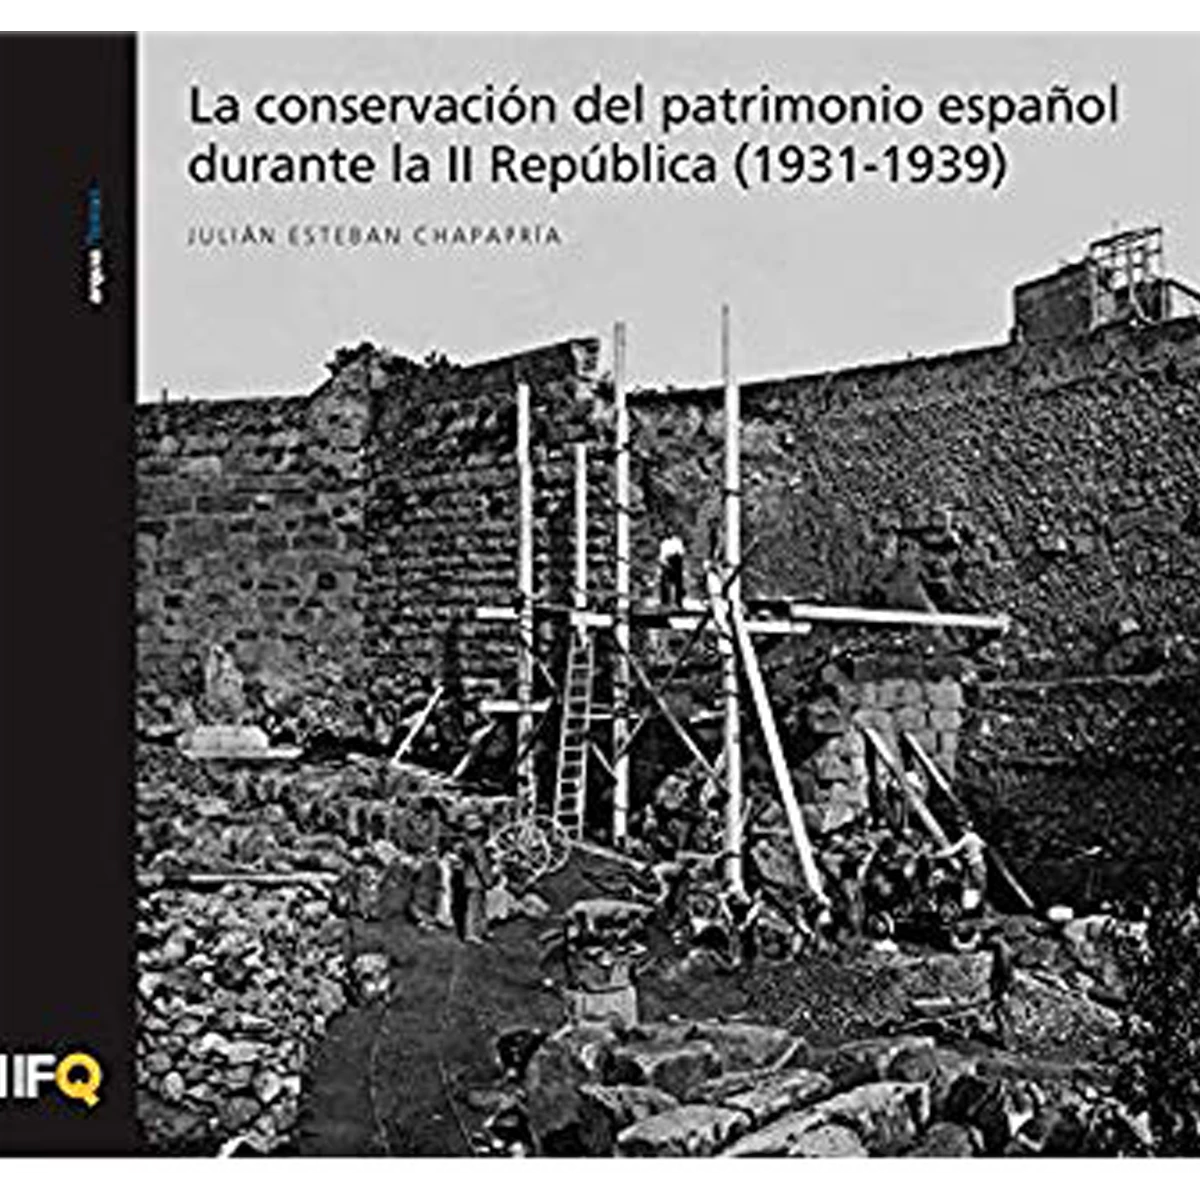 La conservación del patrimonio español durante la II República (1931-1939)